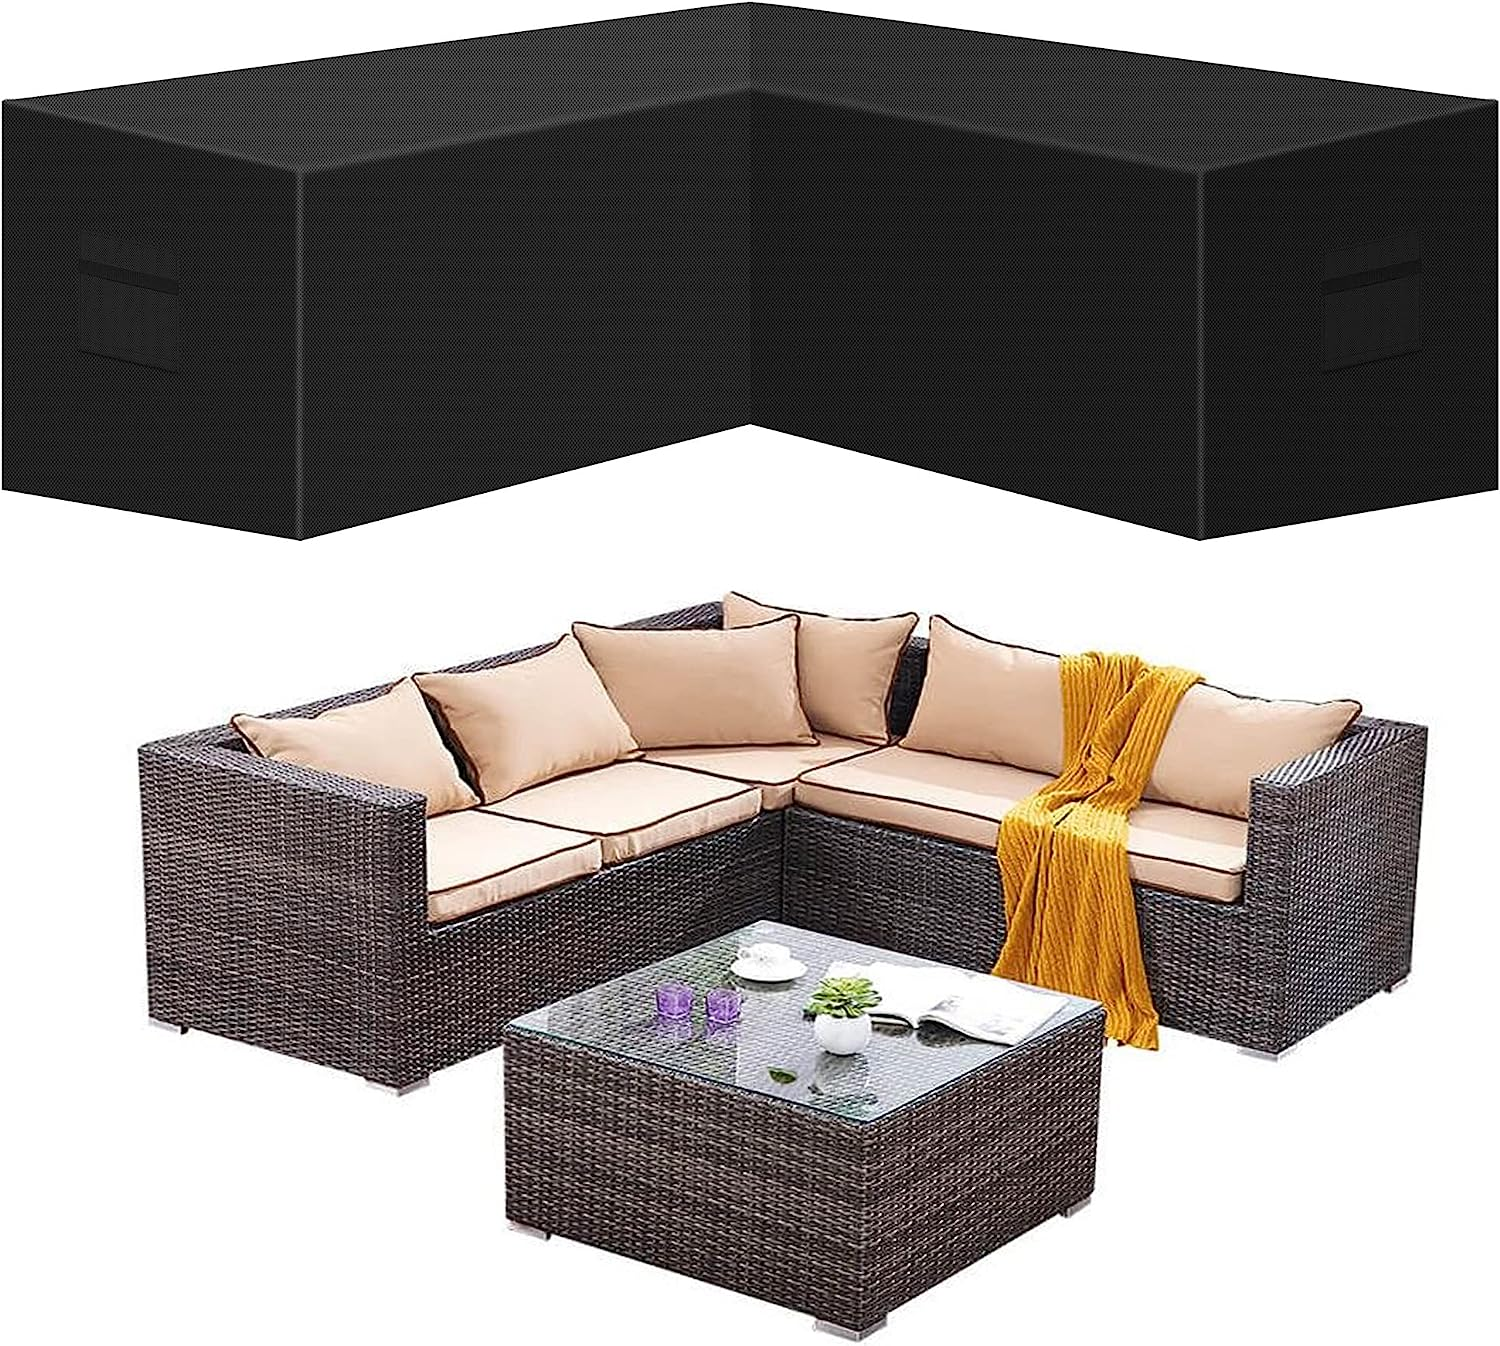 Úti V Lagaður Sectional sófa Cover Verönd Sectional Furniture Set Covers